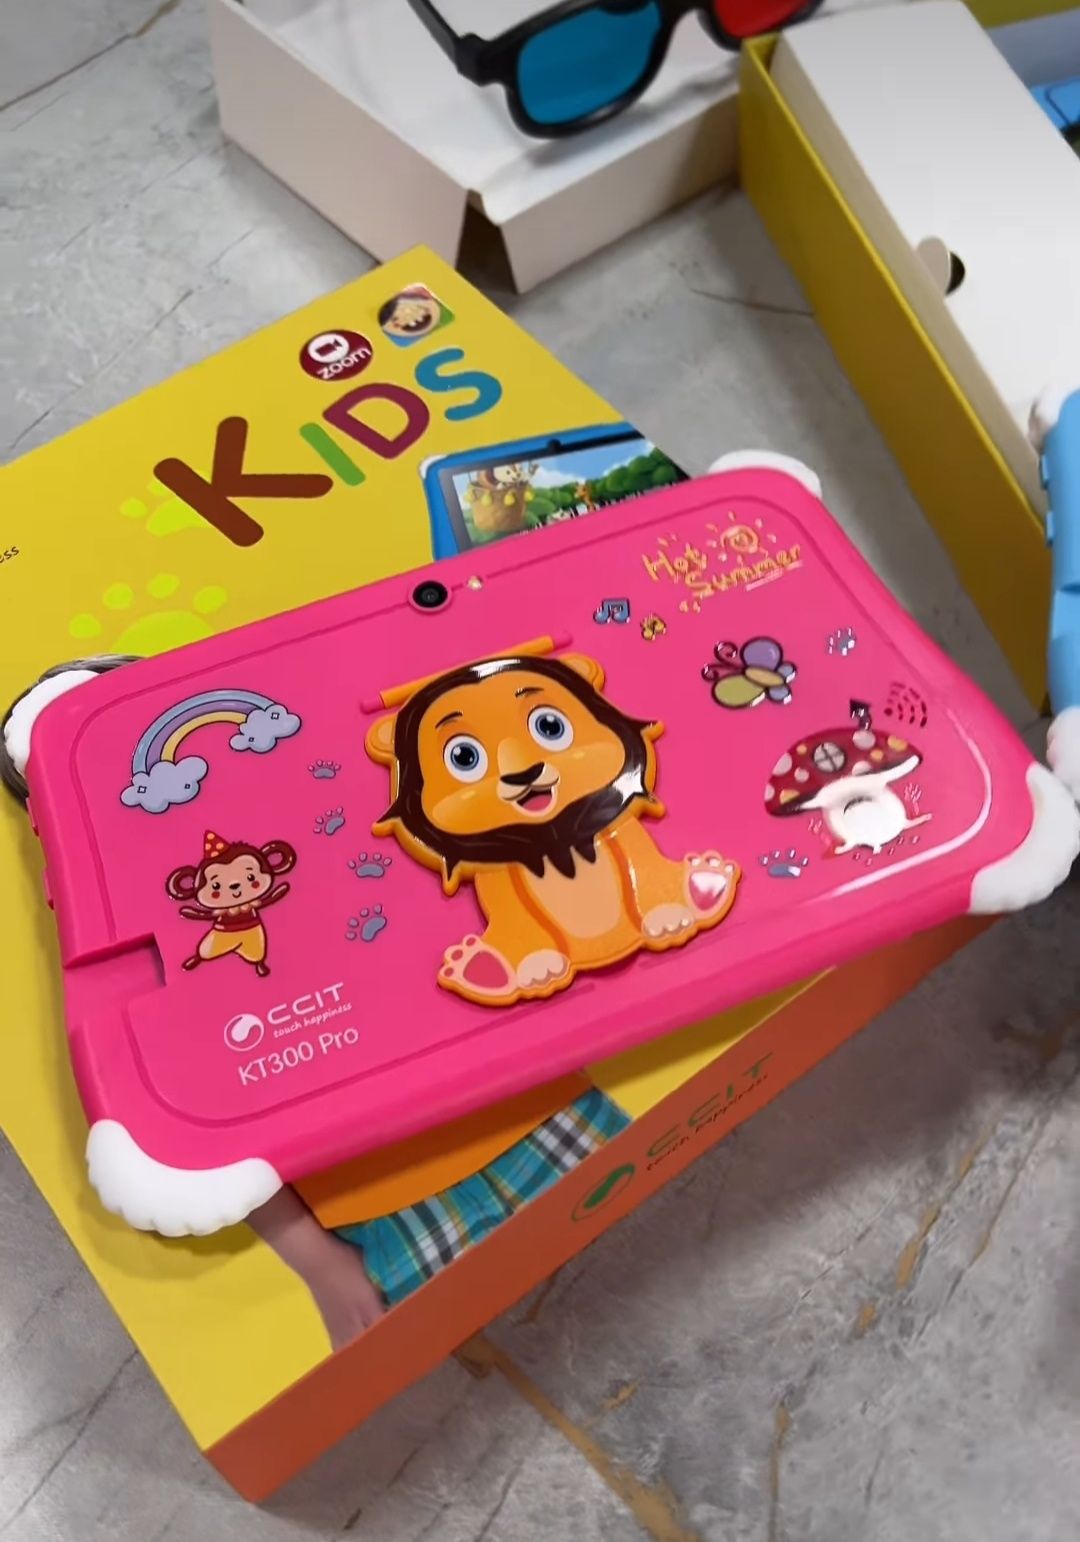 Детский планшет CCIT KT-300Pro - 128 GB